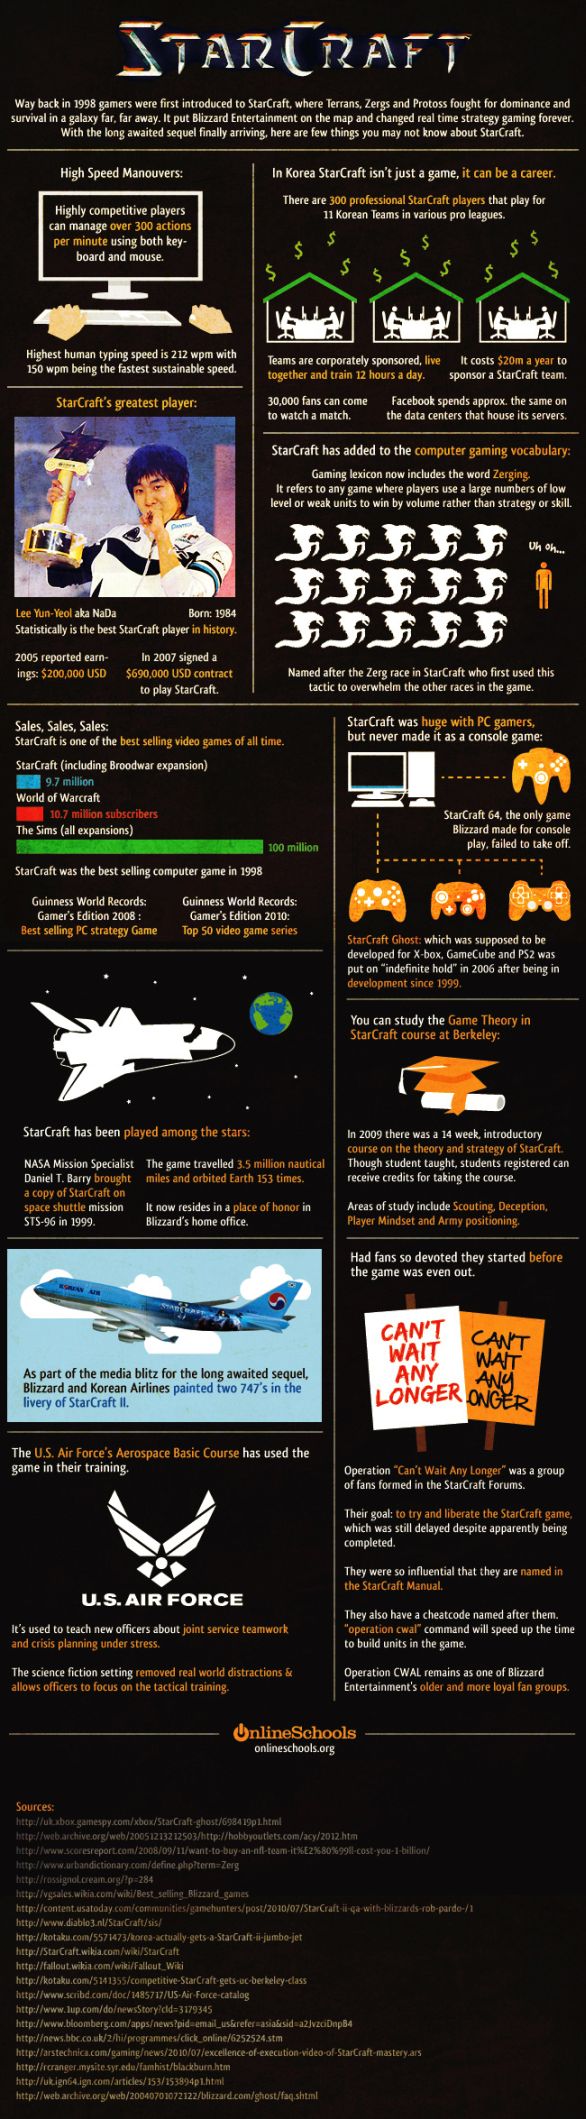 StarCraft: tutto ciÃ² che c'Ã¨ da sapere, in un'infografica